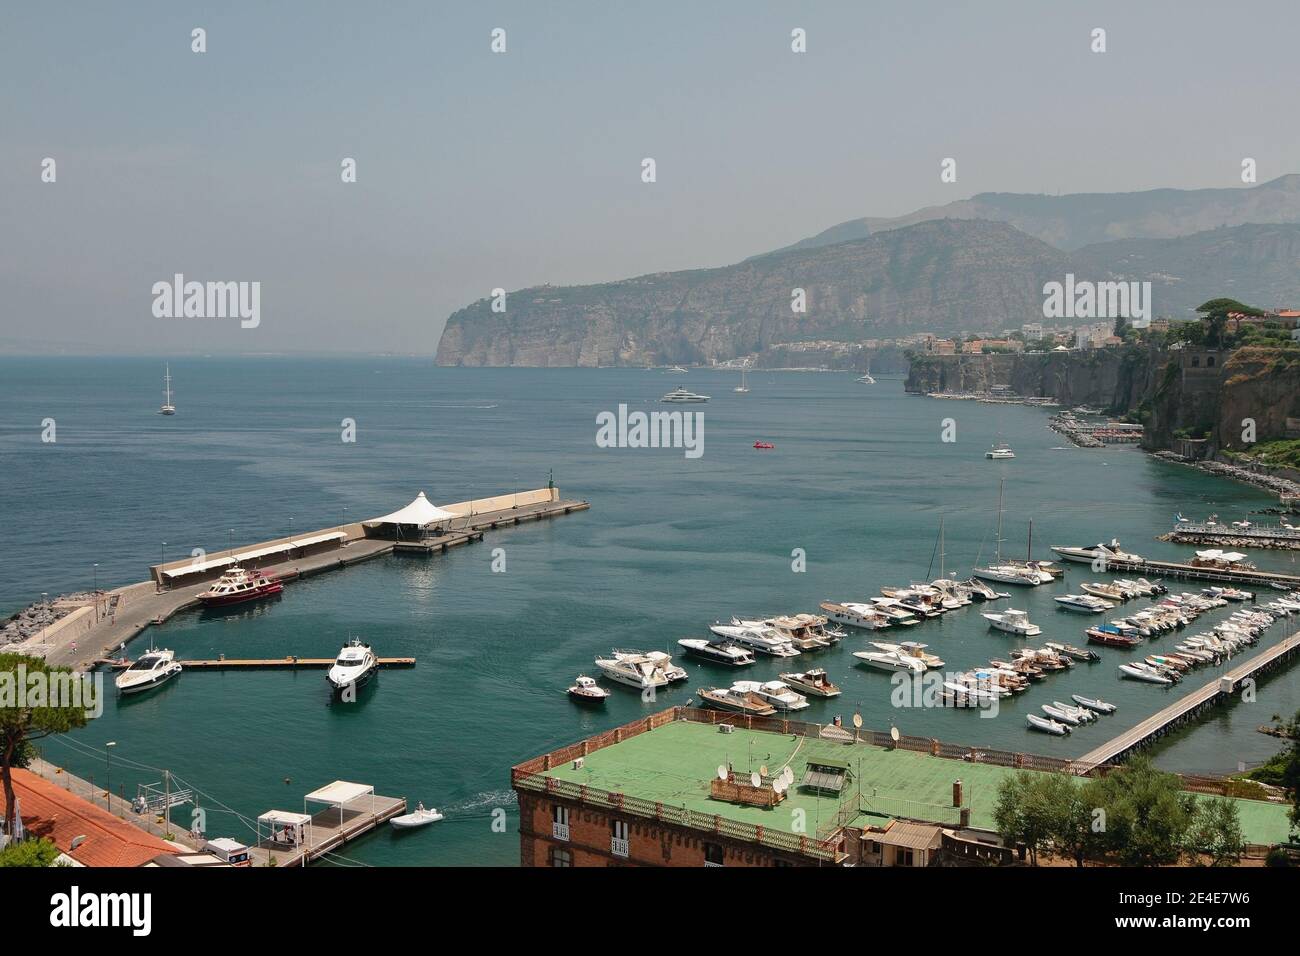 Sea bay, port and yacht marina. Sorrento, Italy Stock Photo